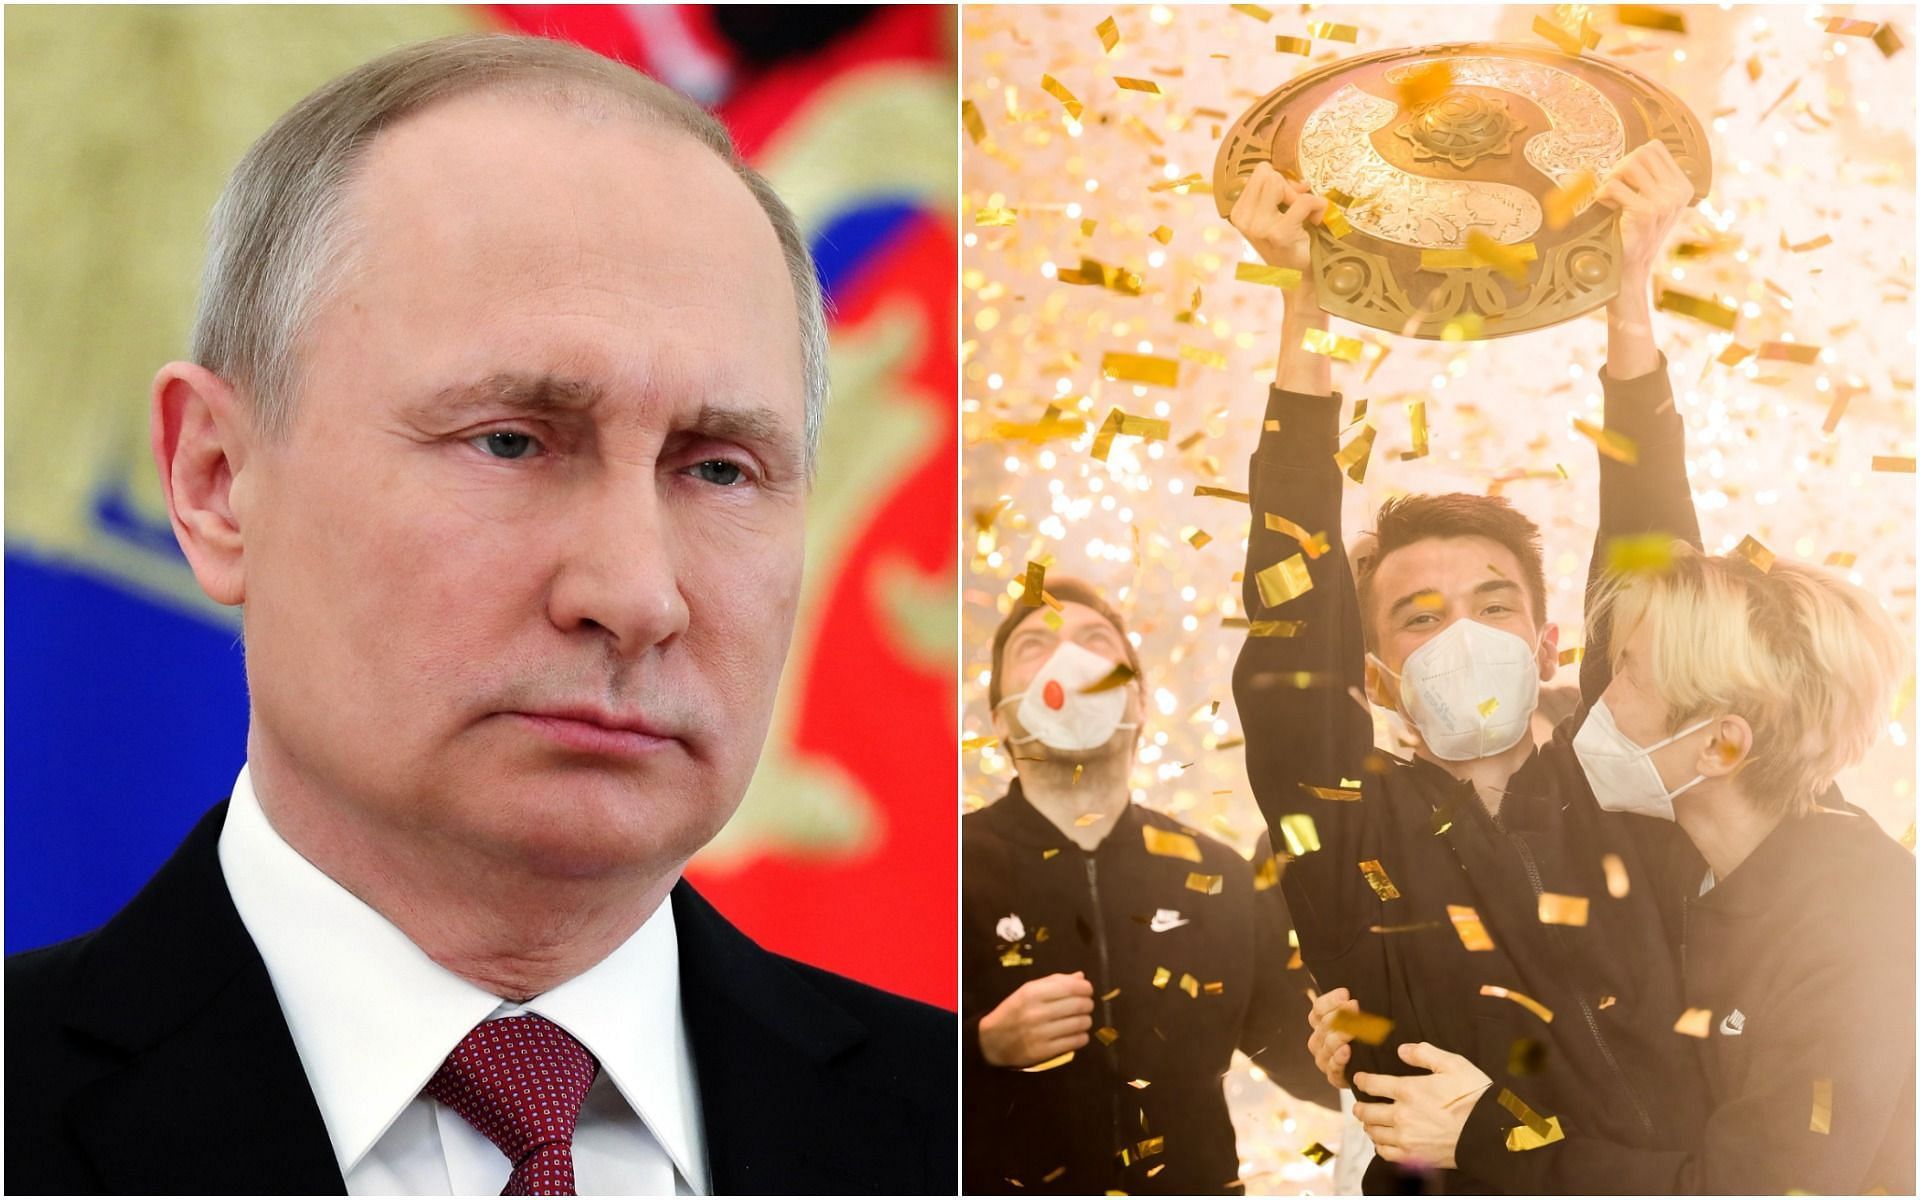 Putin congratulates the Dota 2 TI10 winners (Image via Spokesman and Valve)